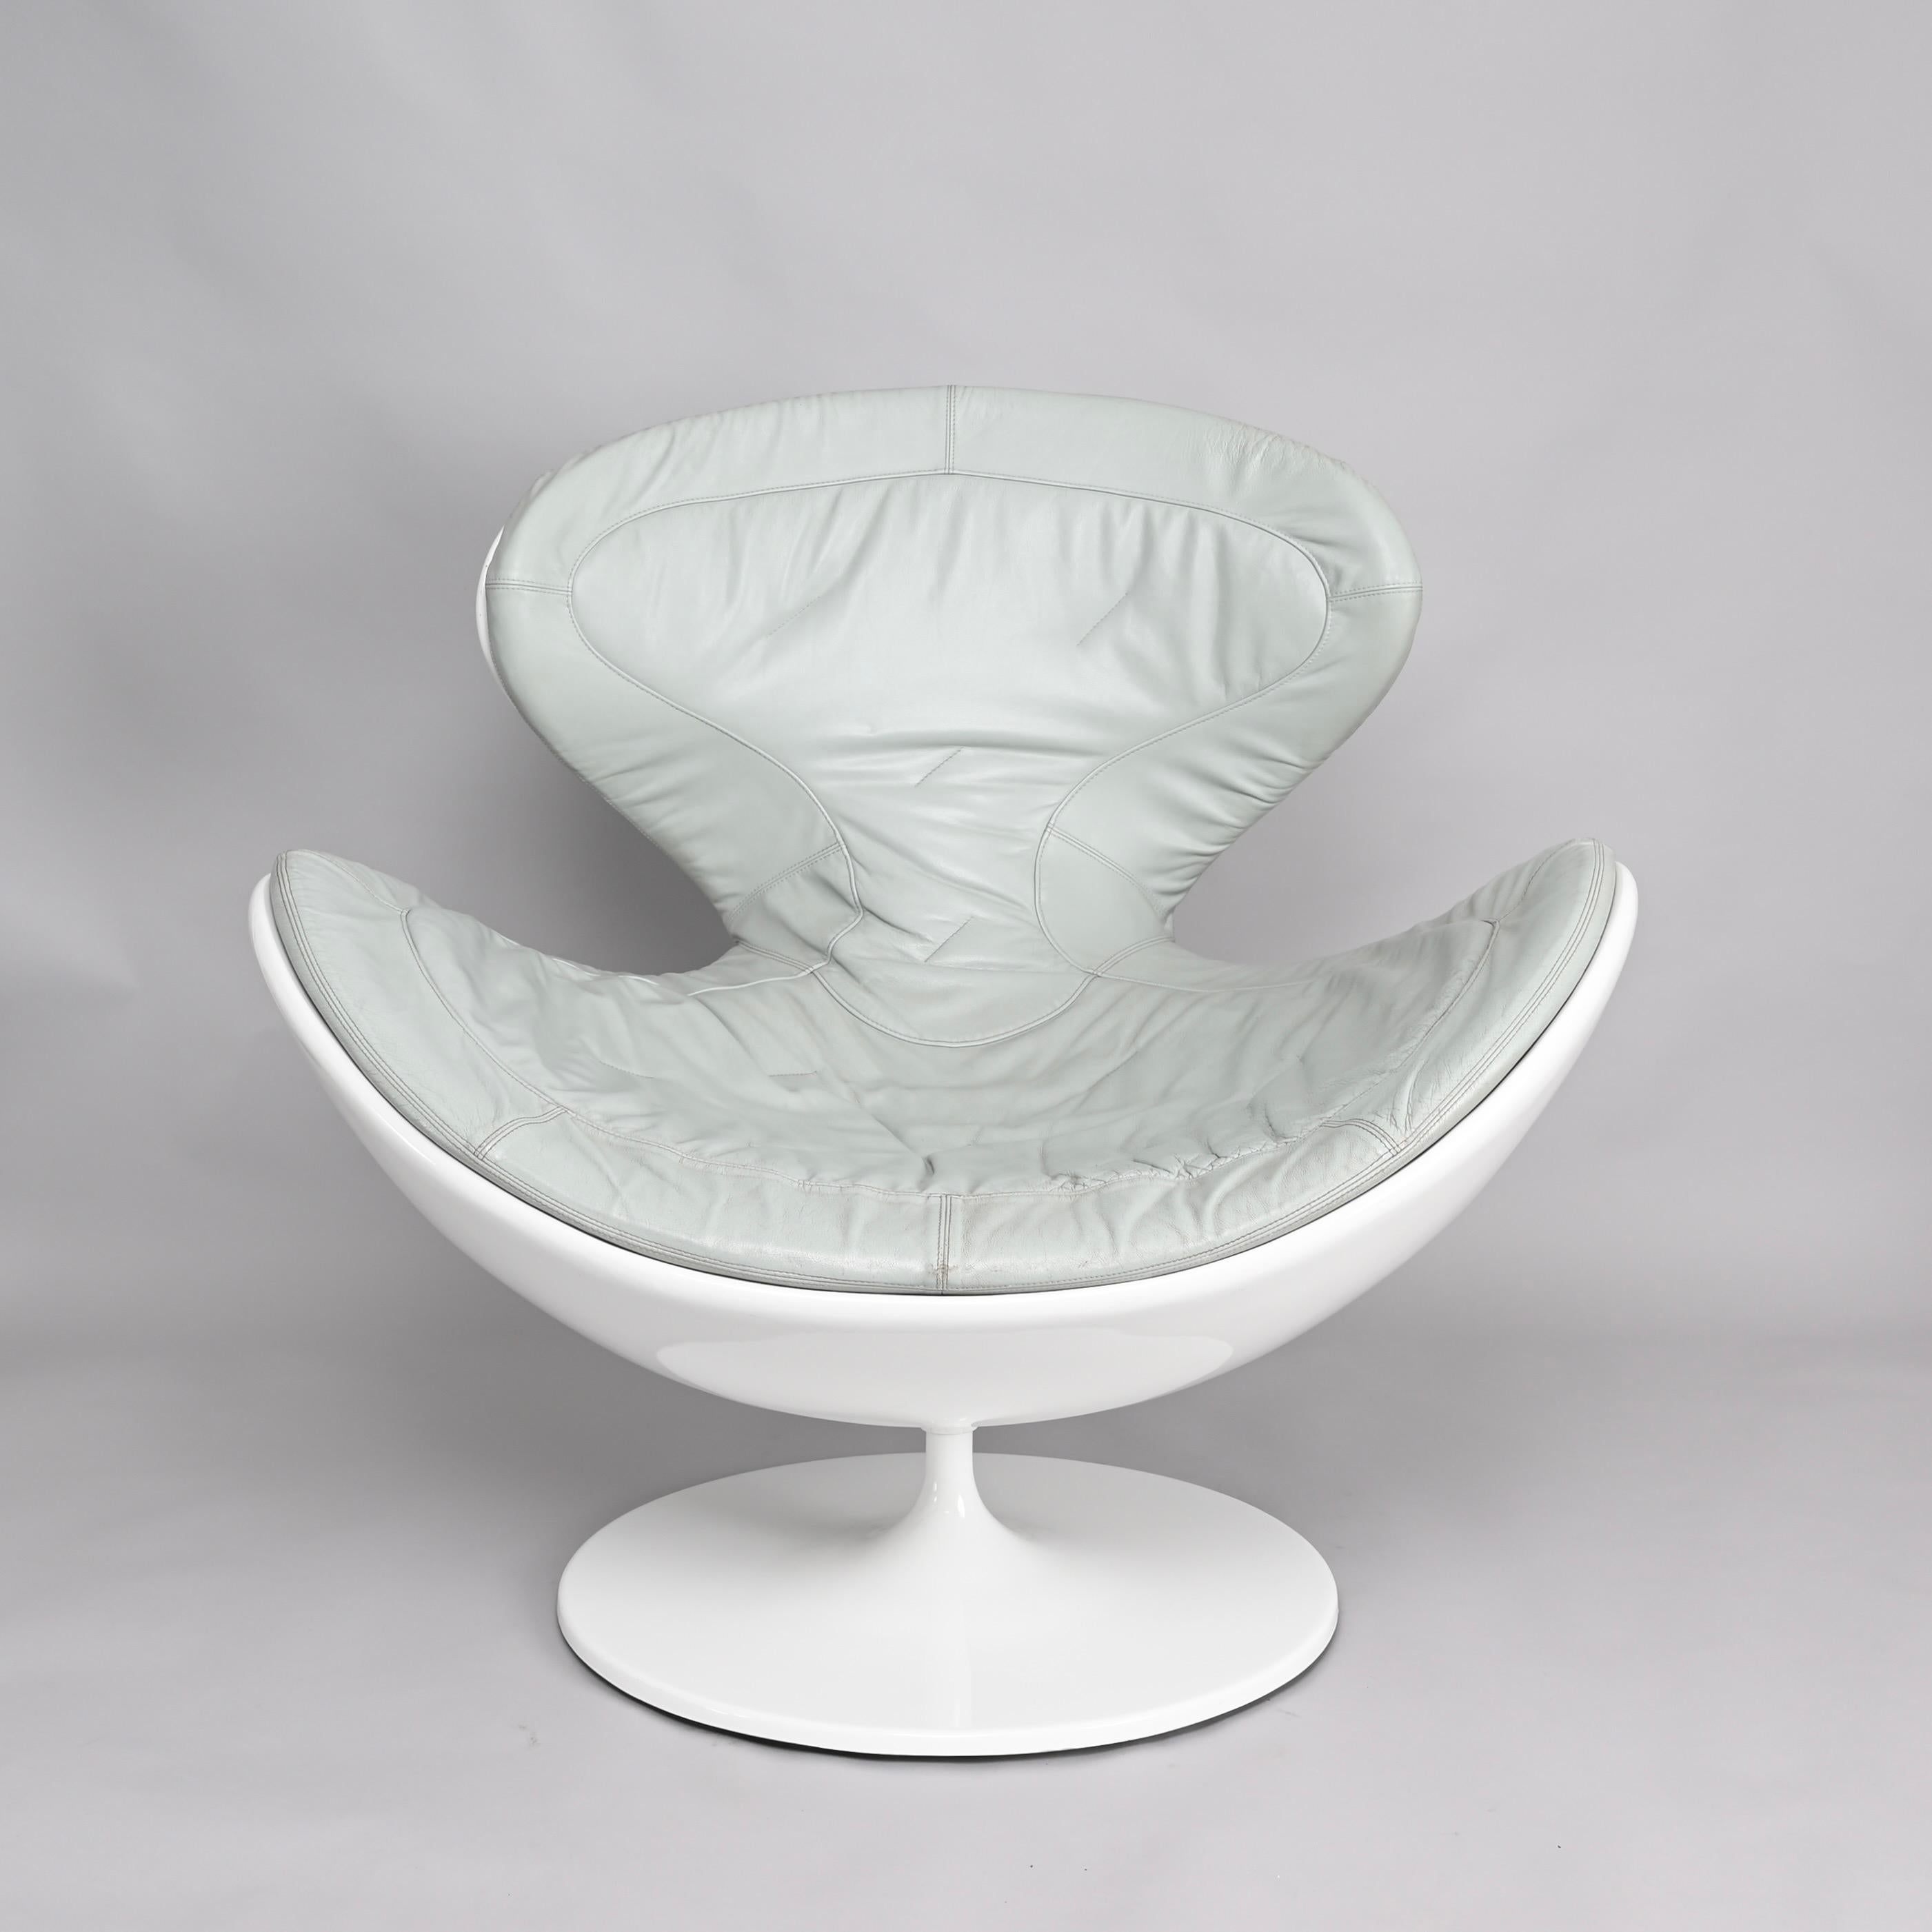 Fantastique fauteuil pivotant Jetsons par Gugliemo Berchicci pour Giovannetti dans un superbe cuir gris avec une structure blanche brillante. Jetsons est un hamac, une chaise-longue, un trône, un nid, à la fois dynamique et moderne.

La structure de